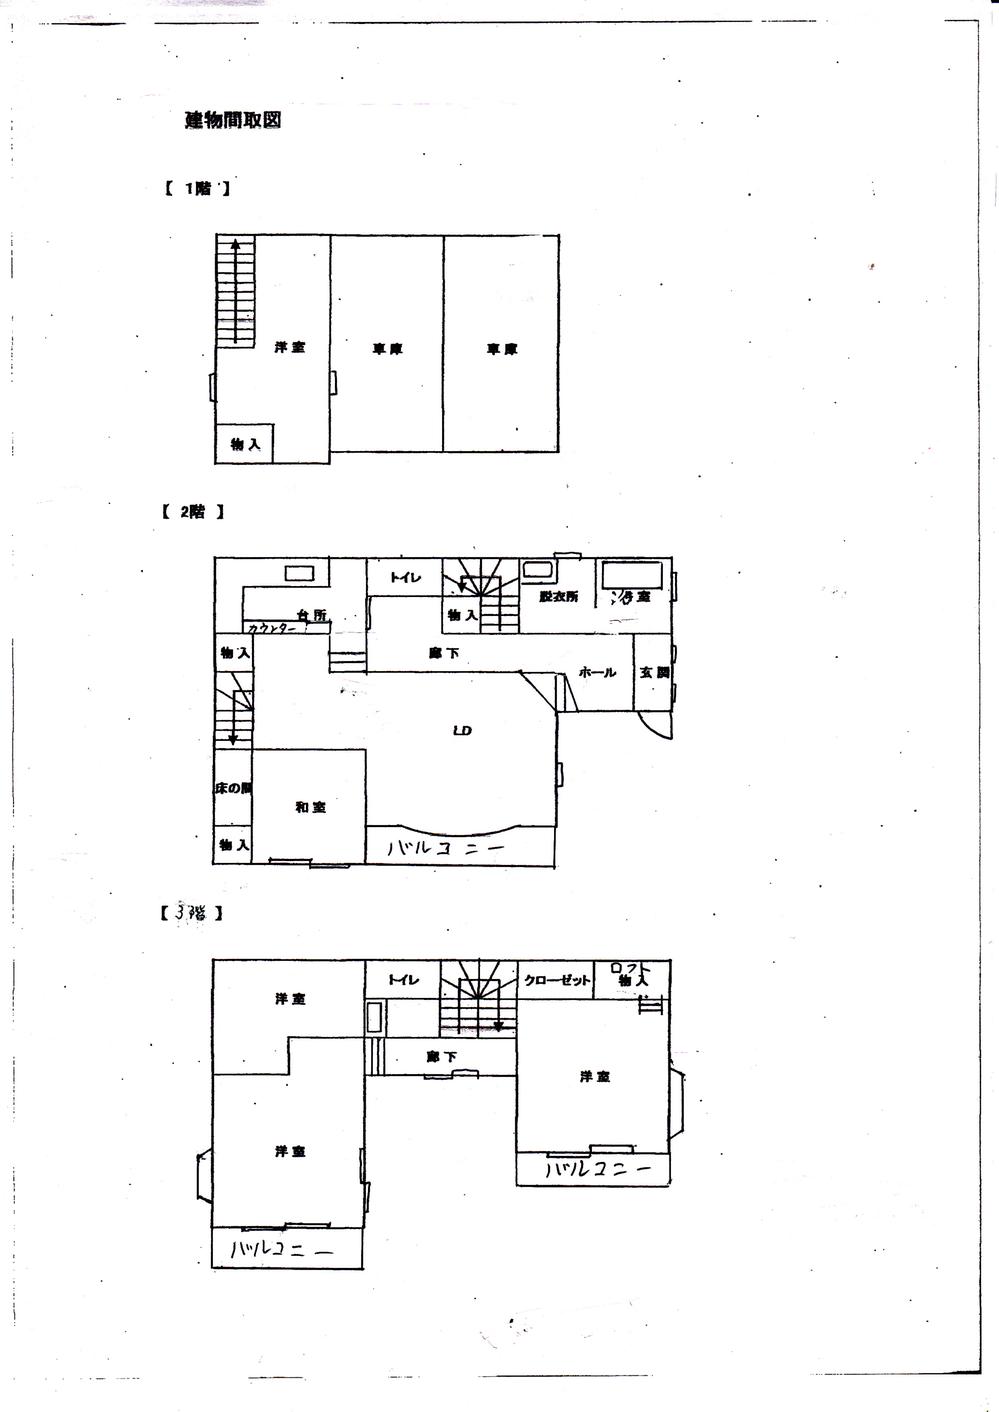 Floor plan. 14.8 million yen, 4LDK + S (storeroom), Land area 130.22 sq m , Building area 158.76 sq m floor plan